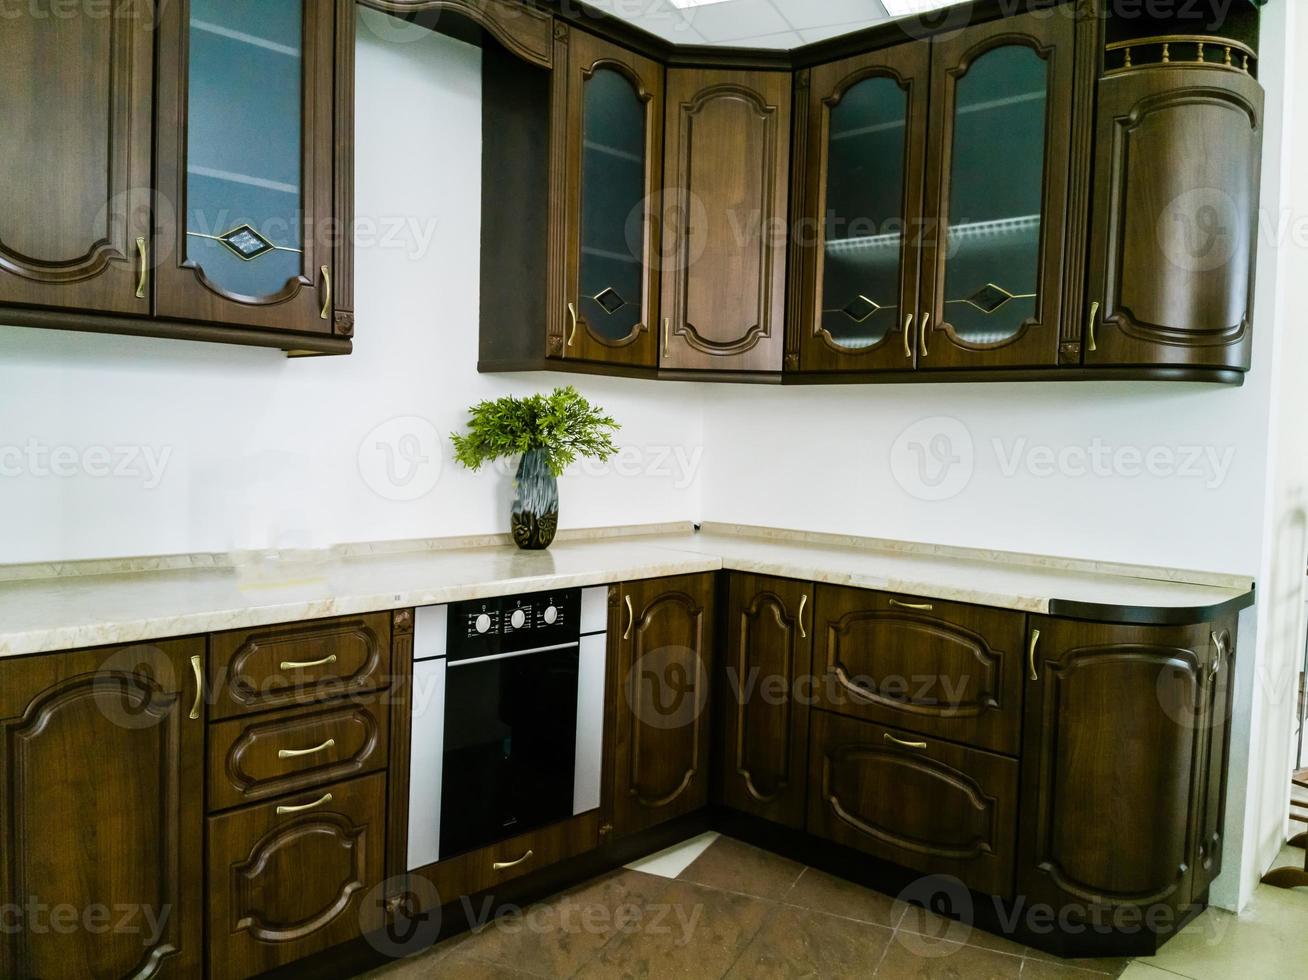 cocina moderna contemporánea totalmente equipada en marrón con electrodomésticos de primera calidad y encimeras de granito foto